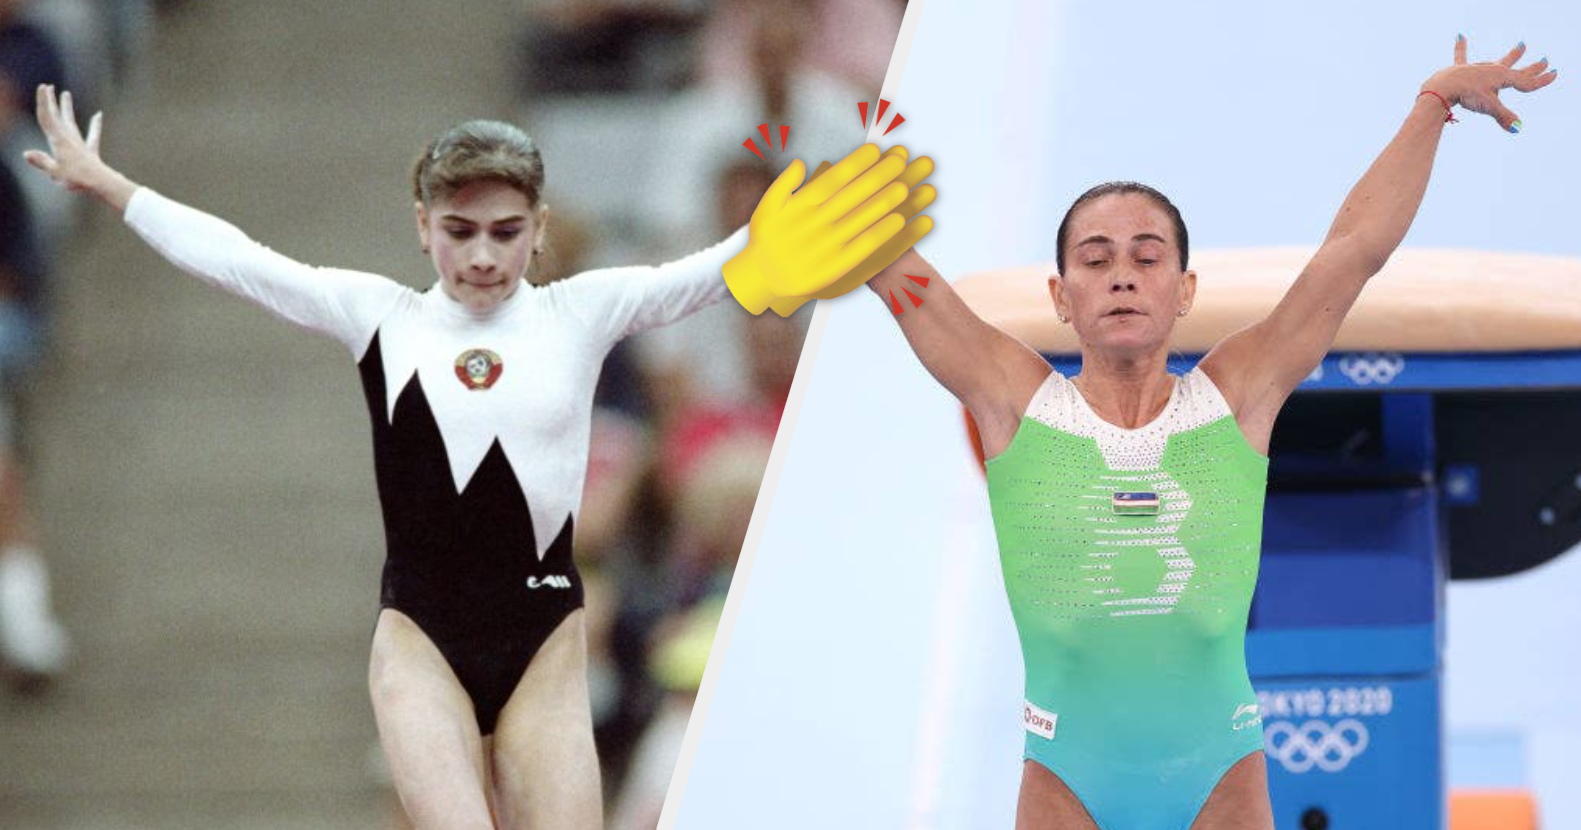 Barely Legal Gymnast Anal - Gymnast Oksana Chusovitina At Tokyo Olympics